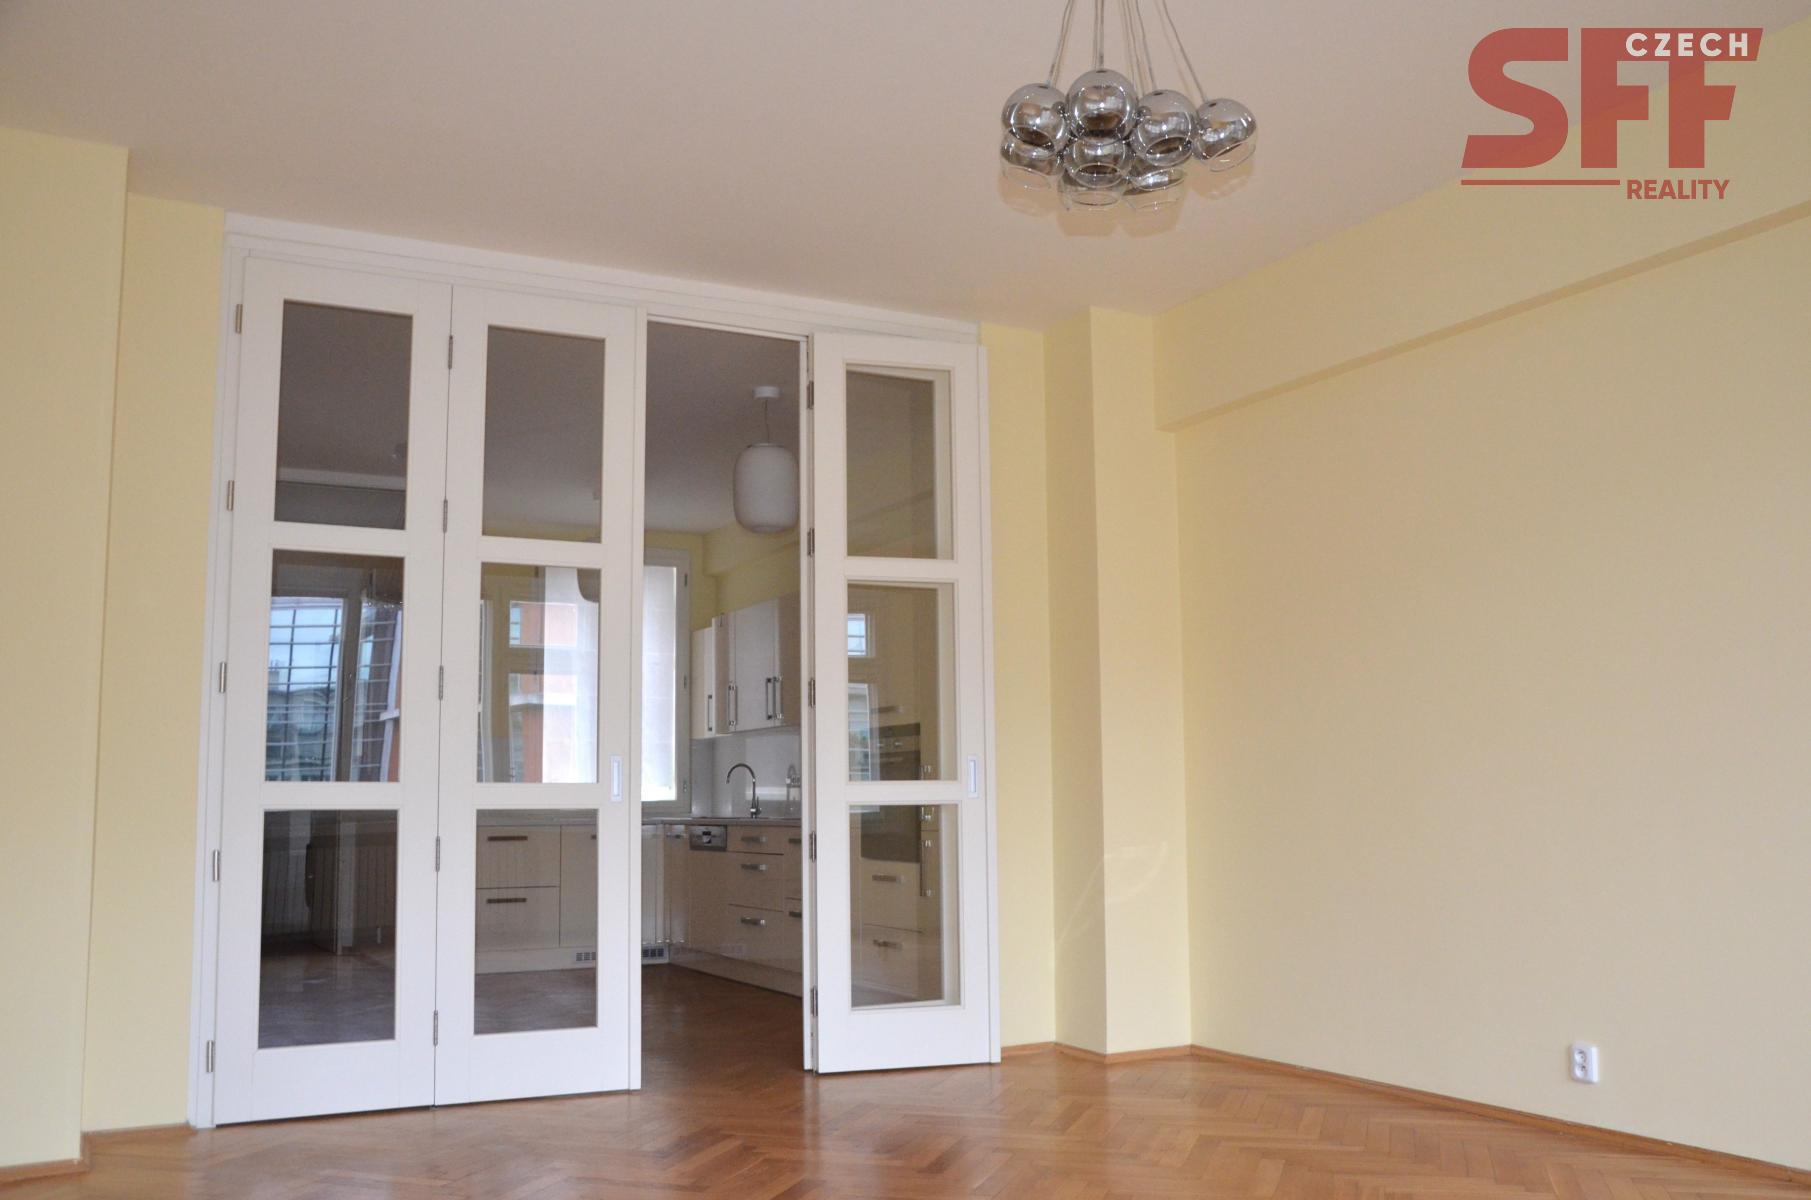 Velký světlý byt 3+1 s dvěma balkóny k pronájmu Praha 5 - Smíchov u metra Anděl